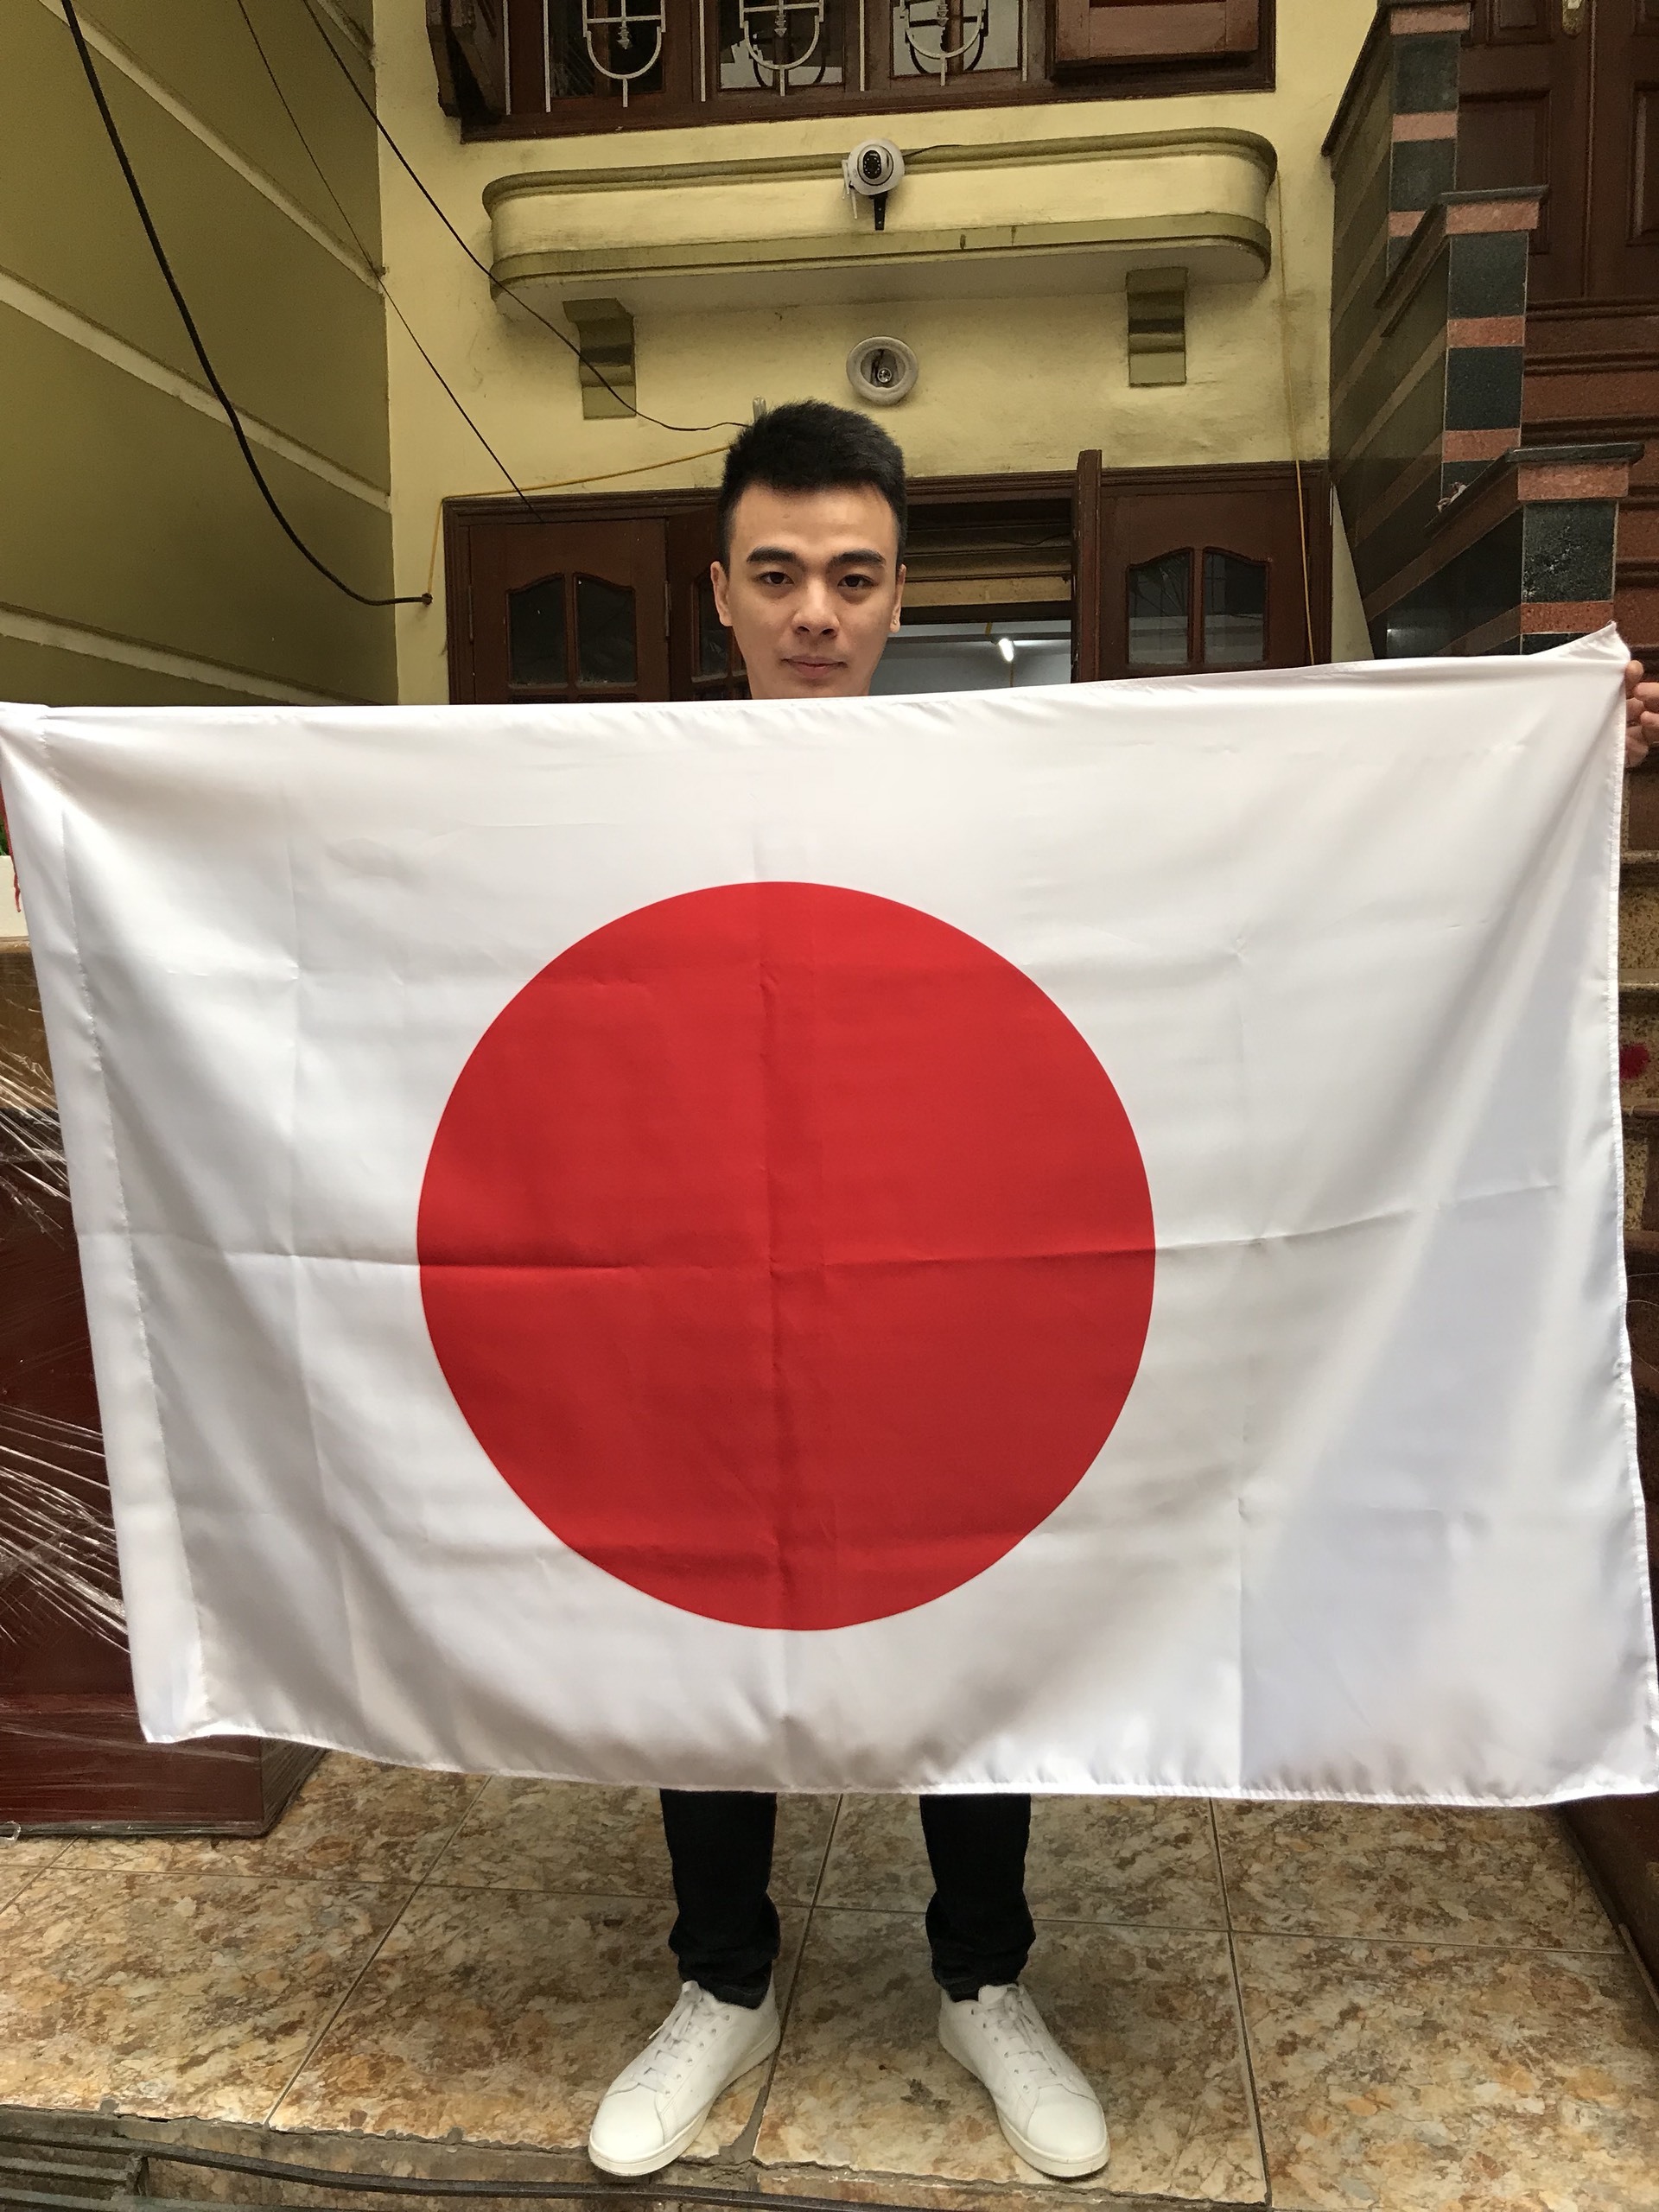 In cờ Nhật Bản: In cờ Nhật Bản là một trong những hoạt động cần thiết khi bạn muốn tìm hiểu về đất nước này. Cờ Nhật Bản được thiết kế đơn giản và thanh lịch, với màu sắc đỏ trên nền trắng, tượng trưng cho tình yêu thương và sự trân quý của đất nước.